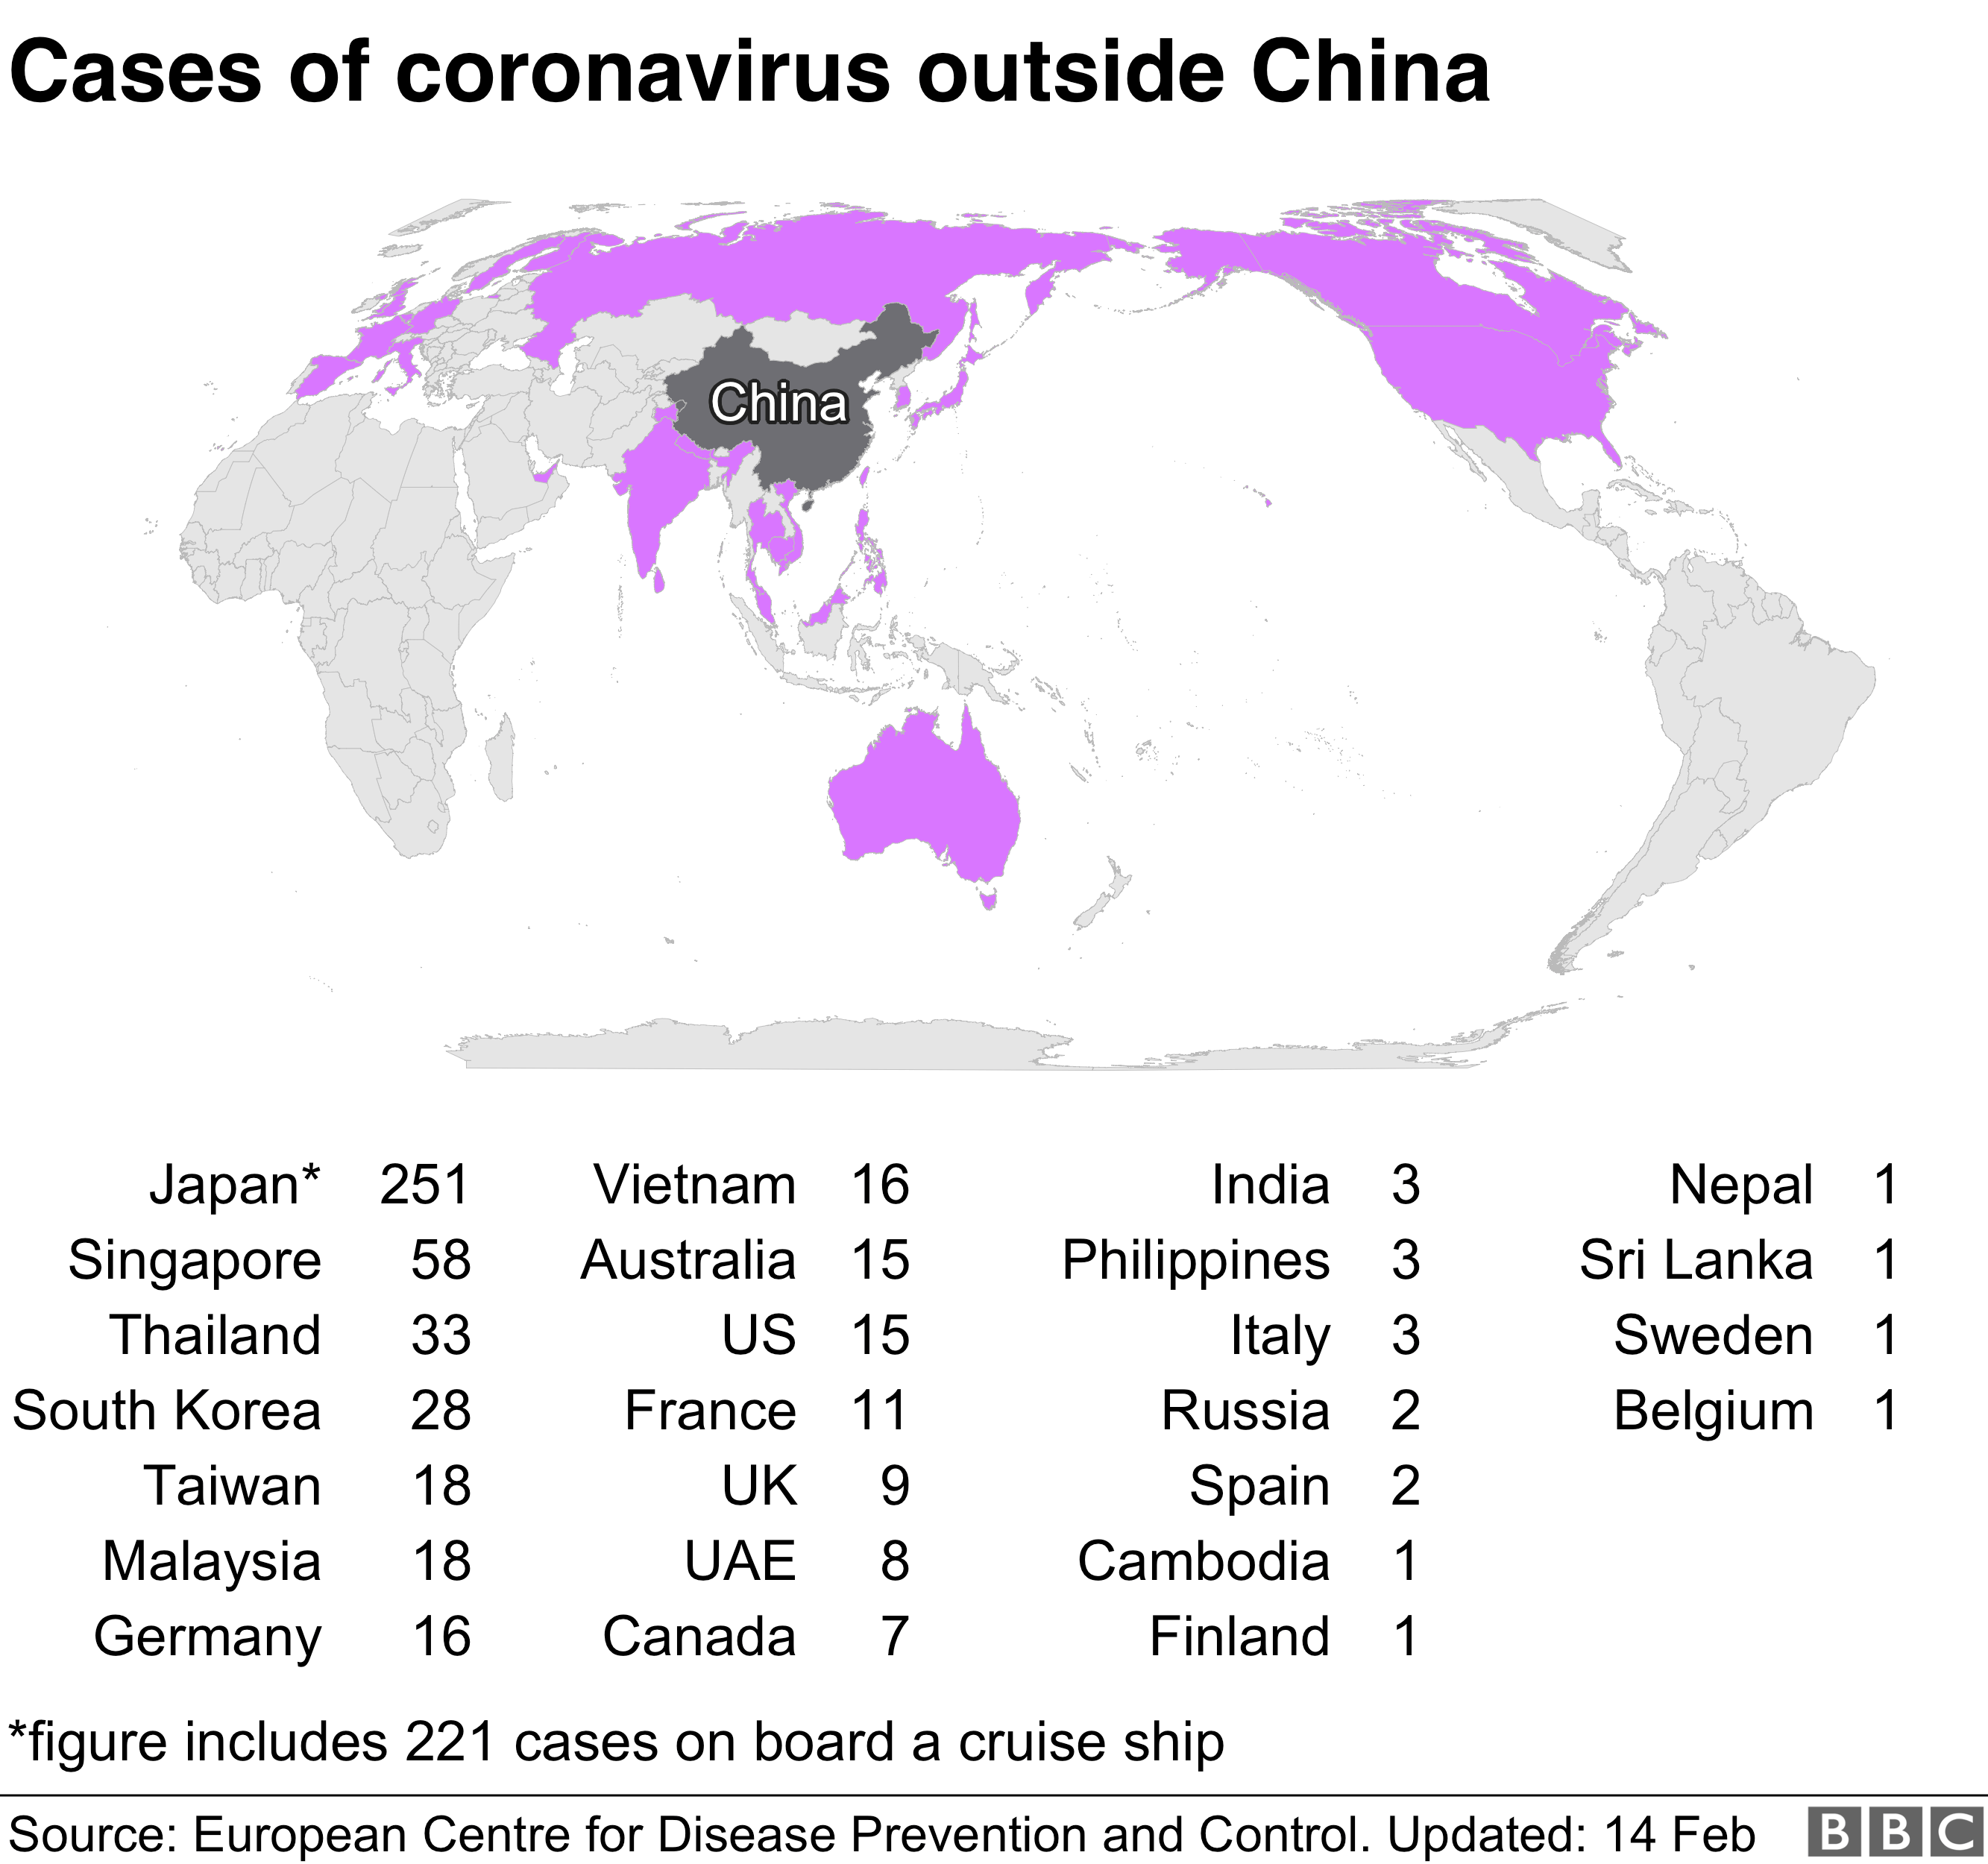 Harta mondială care arată răspândirea Coronavirusului în afara Chinei.  Japonia are 251 cazuri, Singapore 58, Thailanda 33, Coreea de Sud 28, Taiwan 18, Malaezia 18, Germania 16, Vitenam 16, Australia 15, SUA 15, Franța 11, Marea Britanie 9